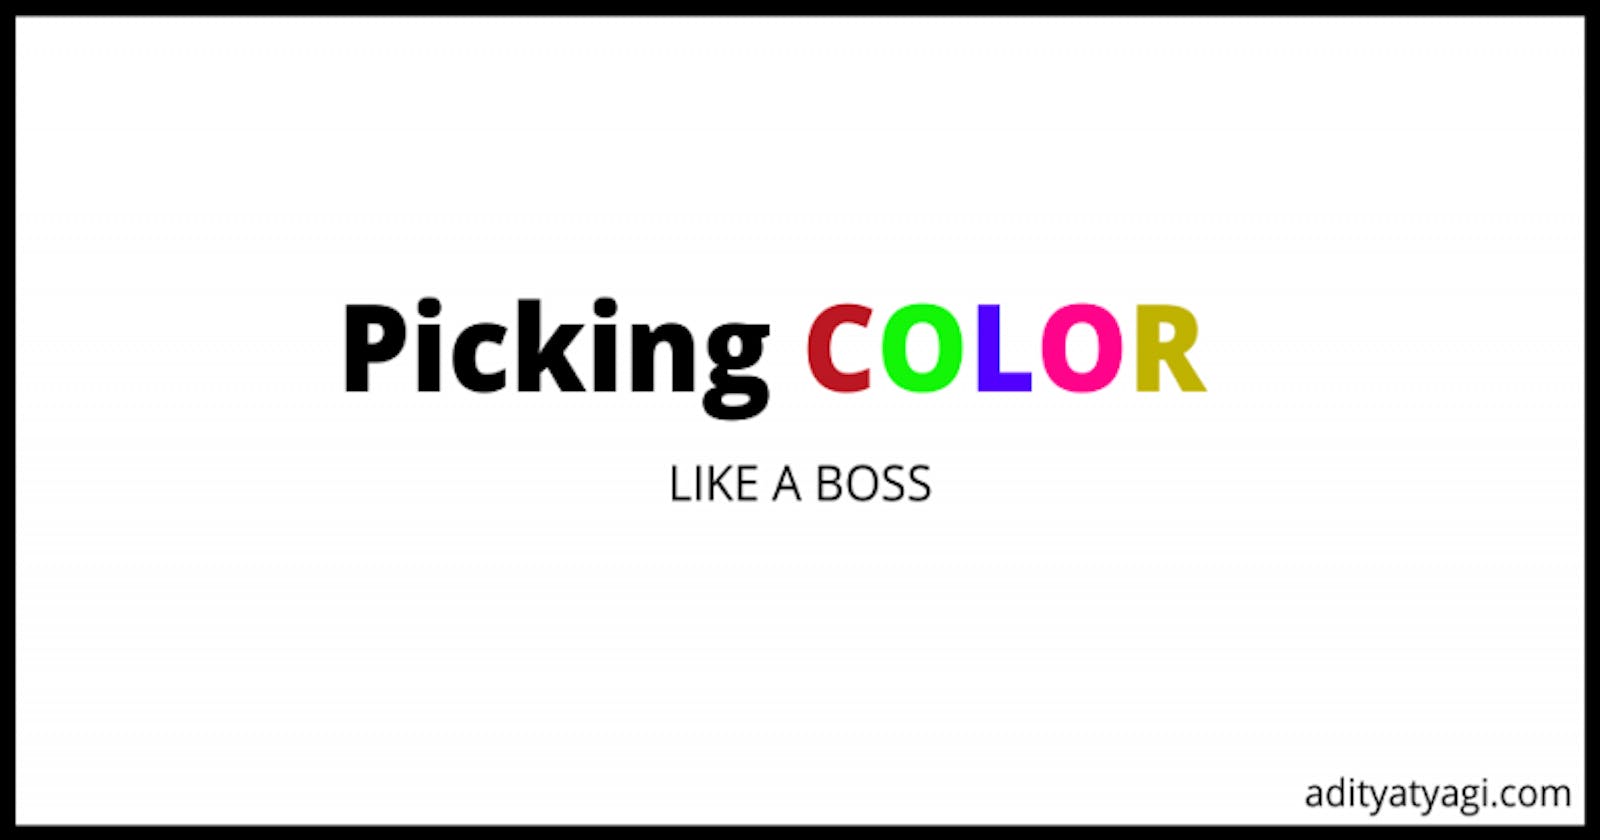 Pick colors: LIKE A BOSS